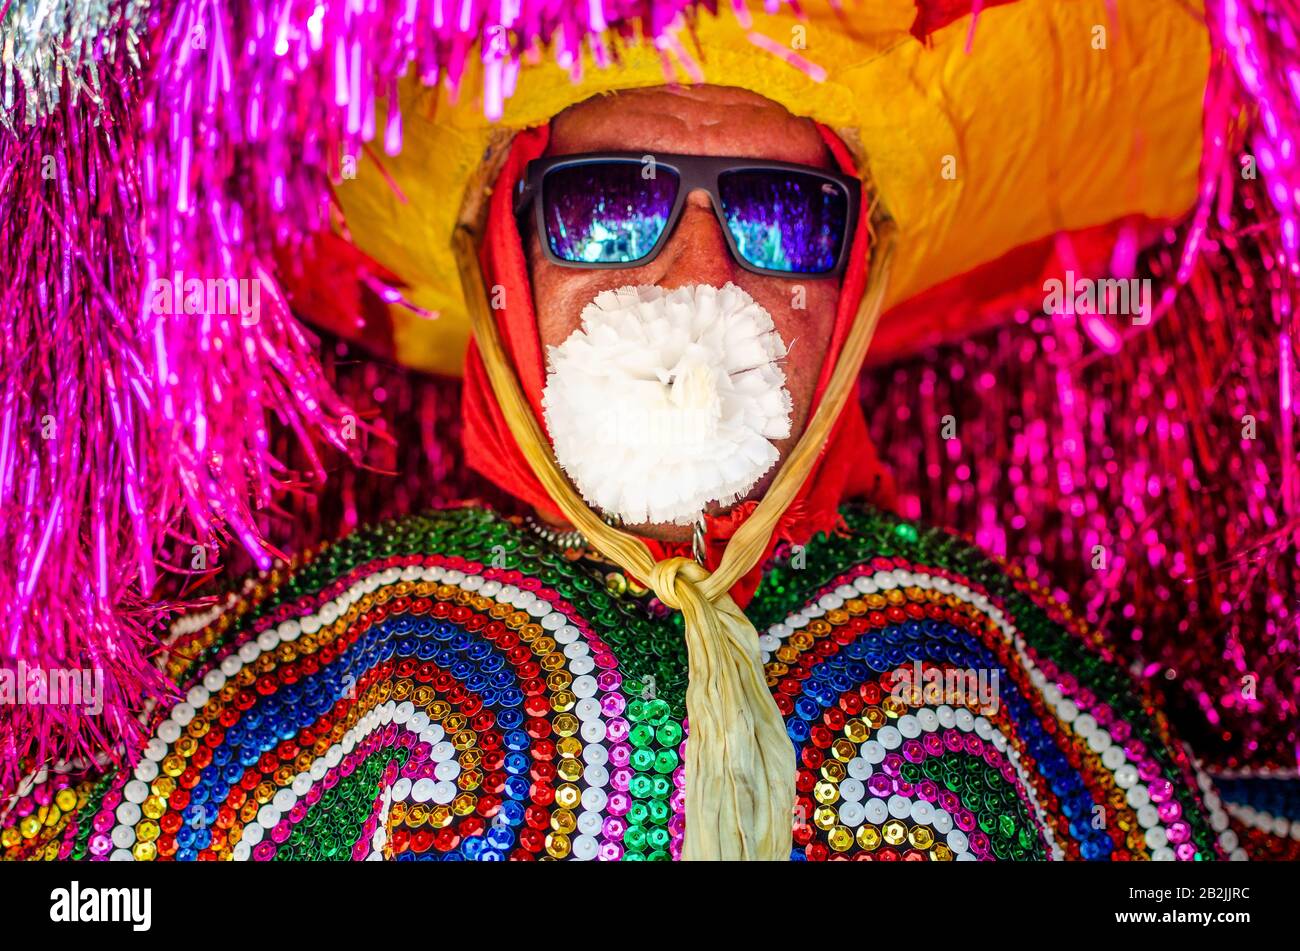 Février 2020, Carnaval Brésilien. Culture populaire, rencontre de 'Maracatus de baque solto' ('rural maracatu'), musique et danse typique de Pernambuco. Banque D'Images